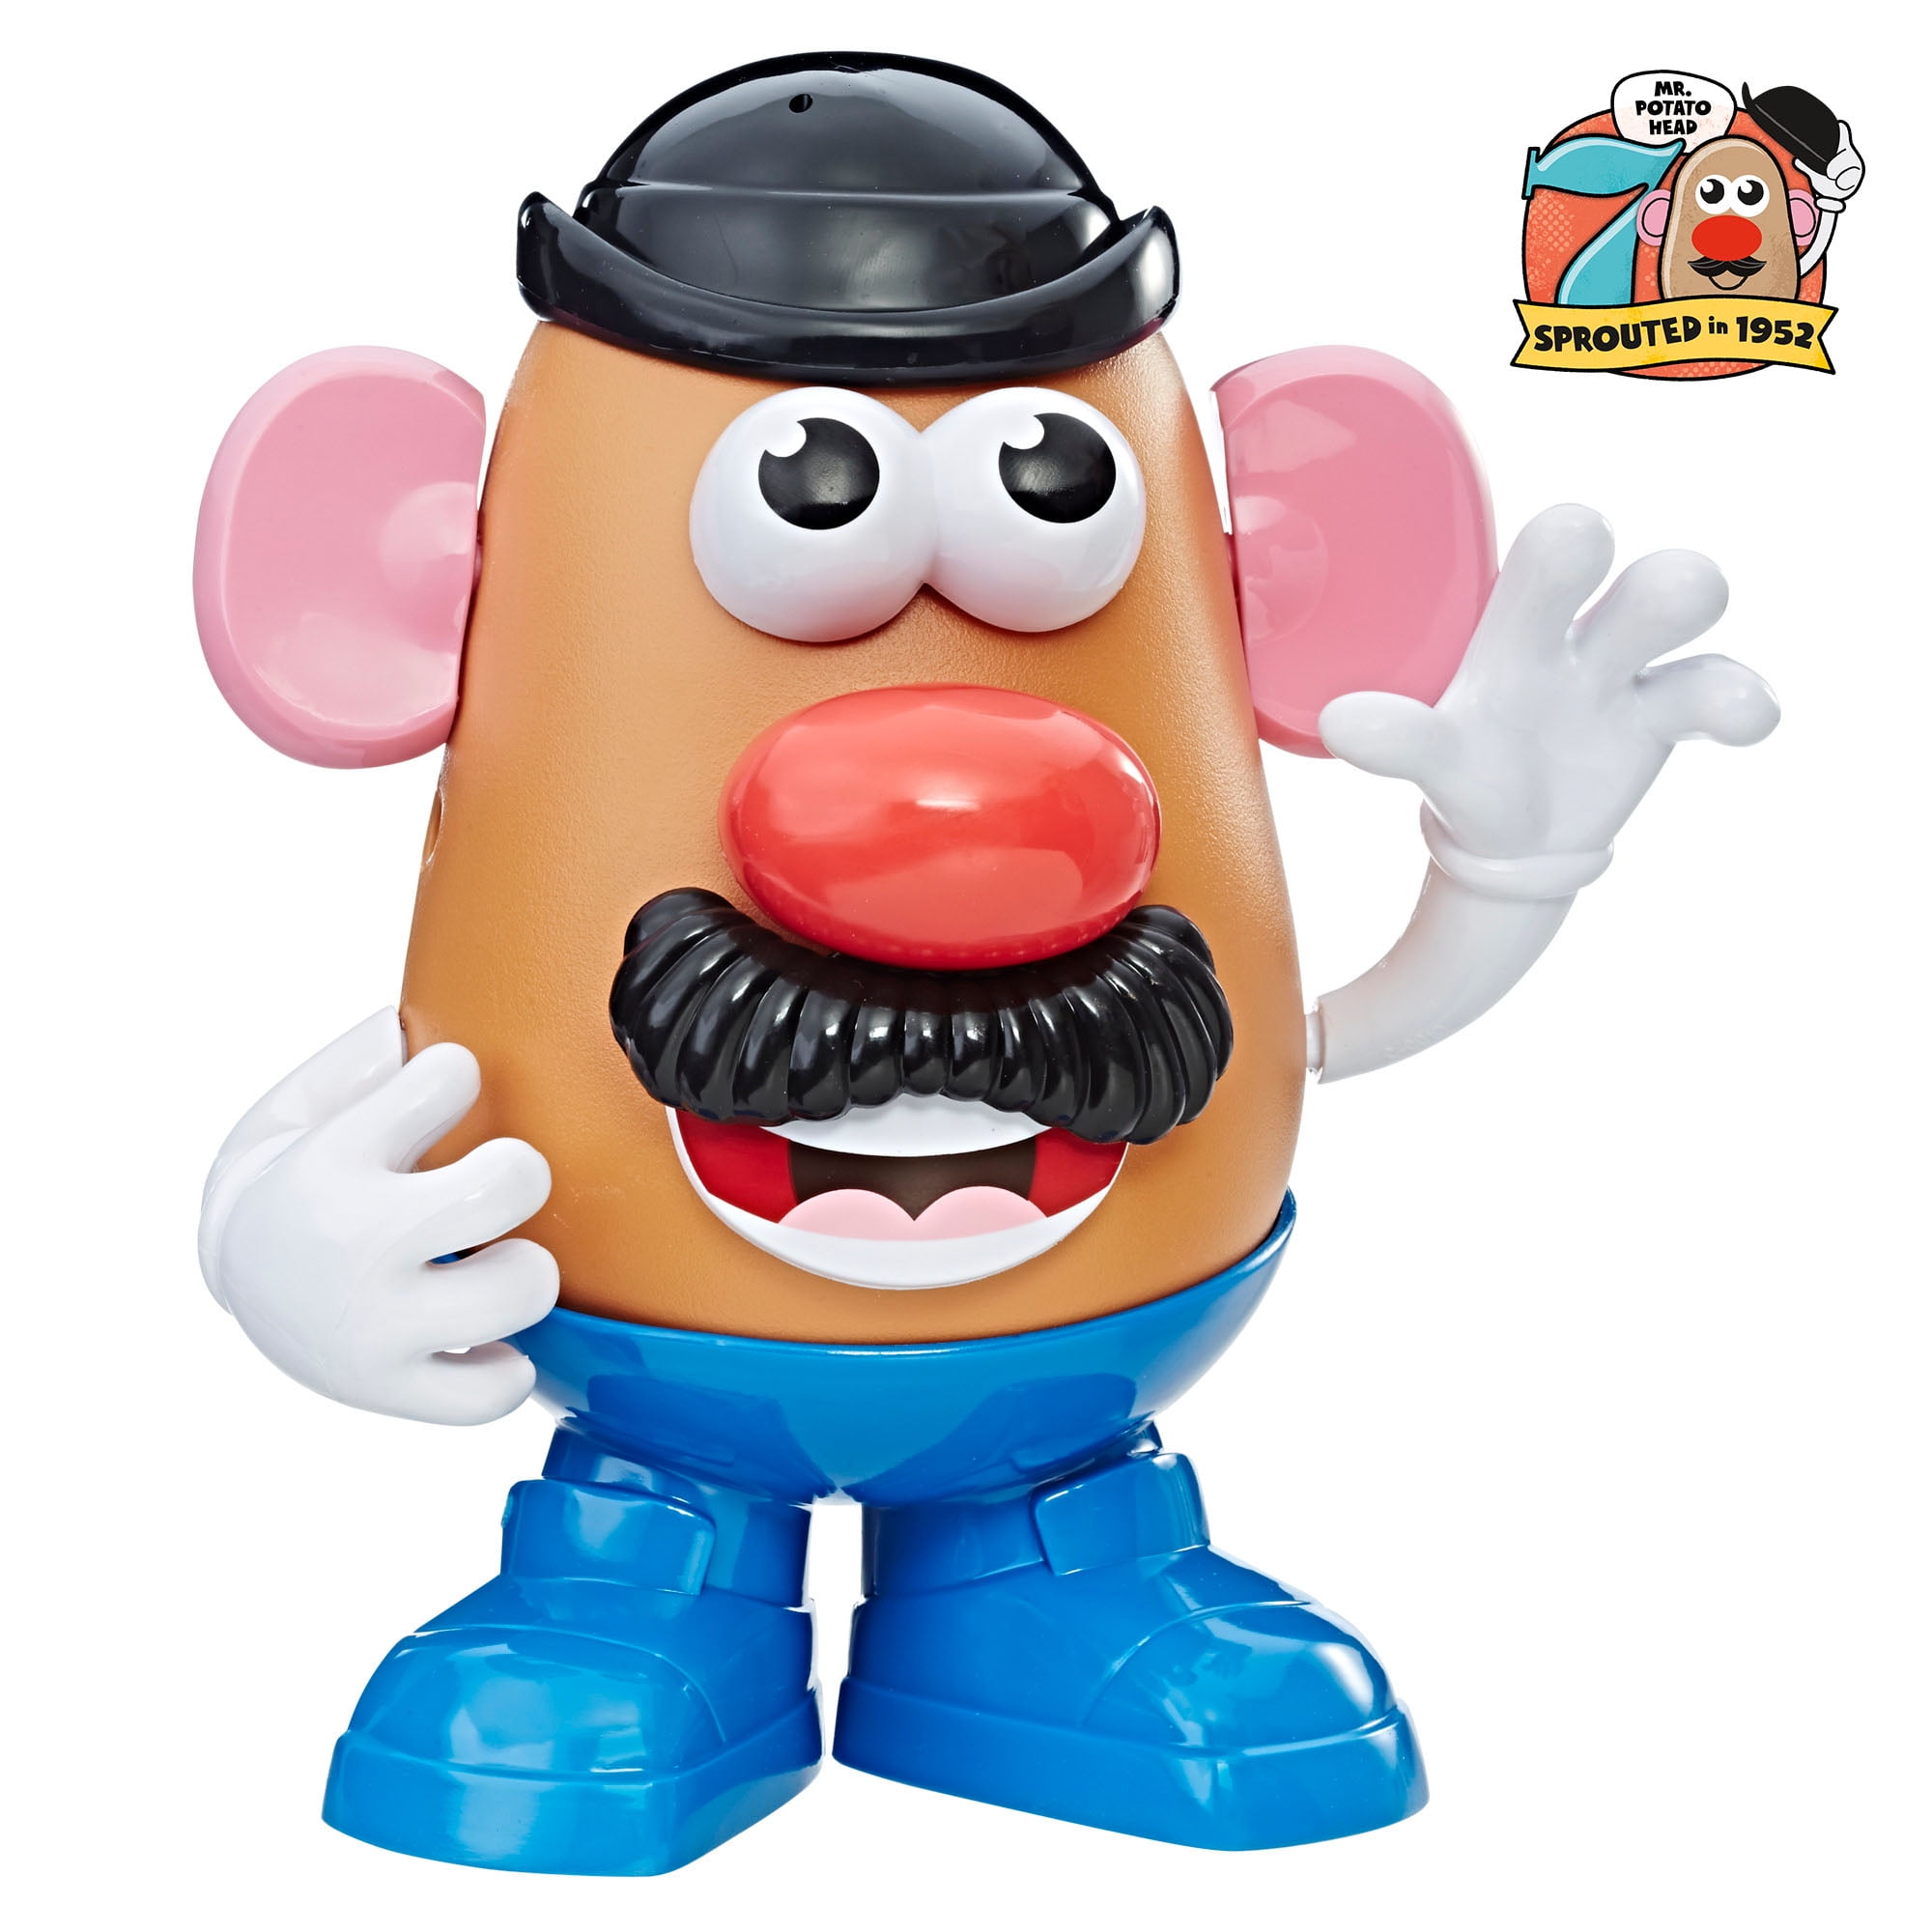 Playskool Friends Potato Head Figure for sale online Mrs 